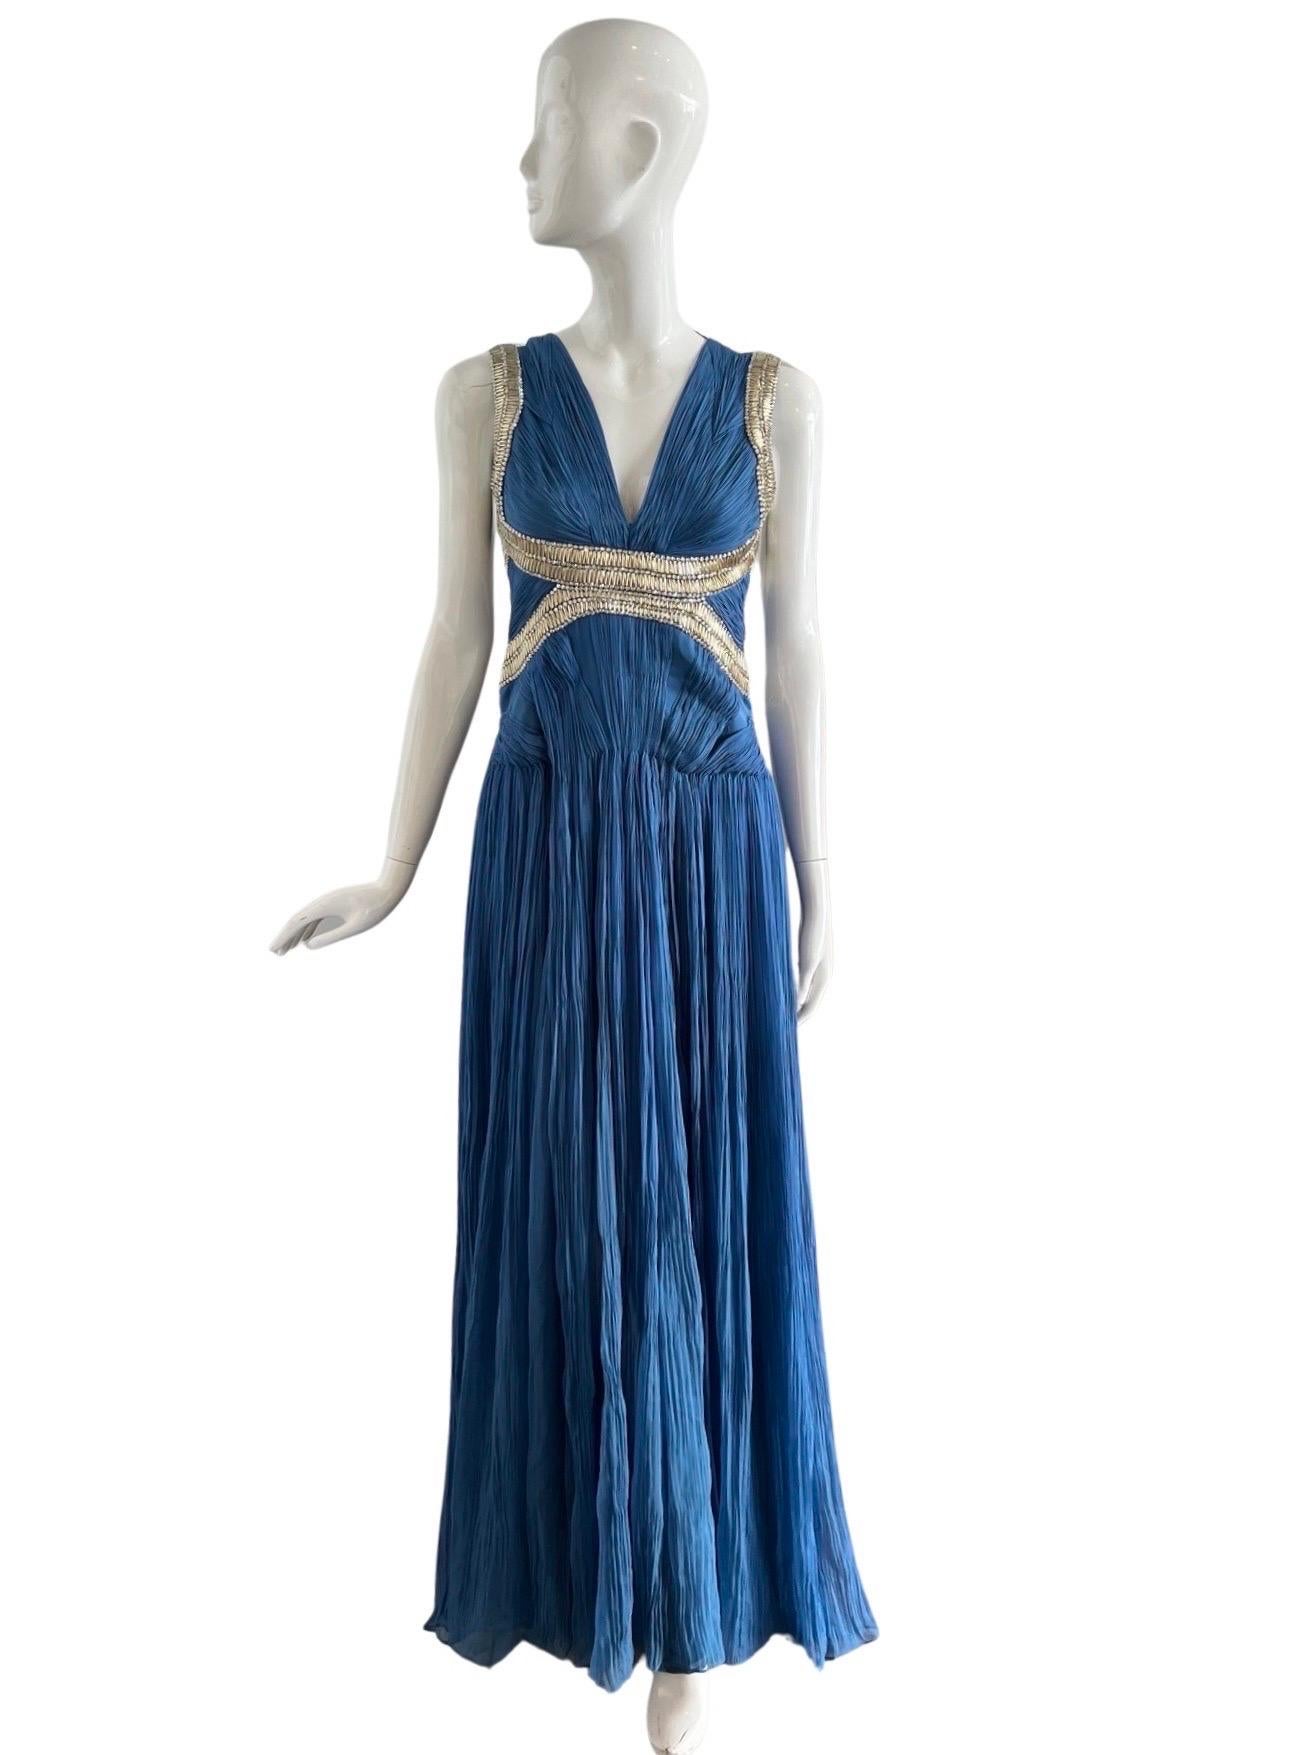 Superbe robe Roberto Cavalli en mousseline de soie bleue fortement plissée à la manière des Grecs, froncée par sections au niveau des hanches.  Le perlage complexe est réalisé avec des perles claires semblables à des pierres précieuses et des perles